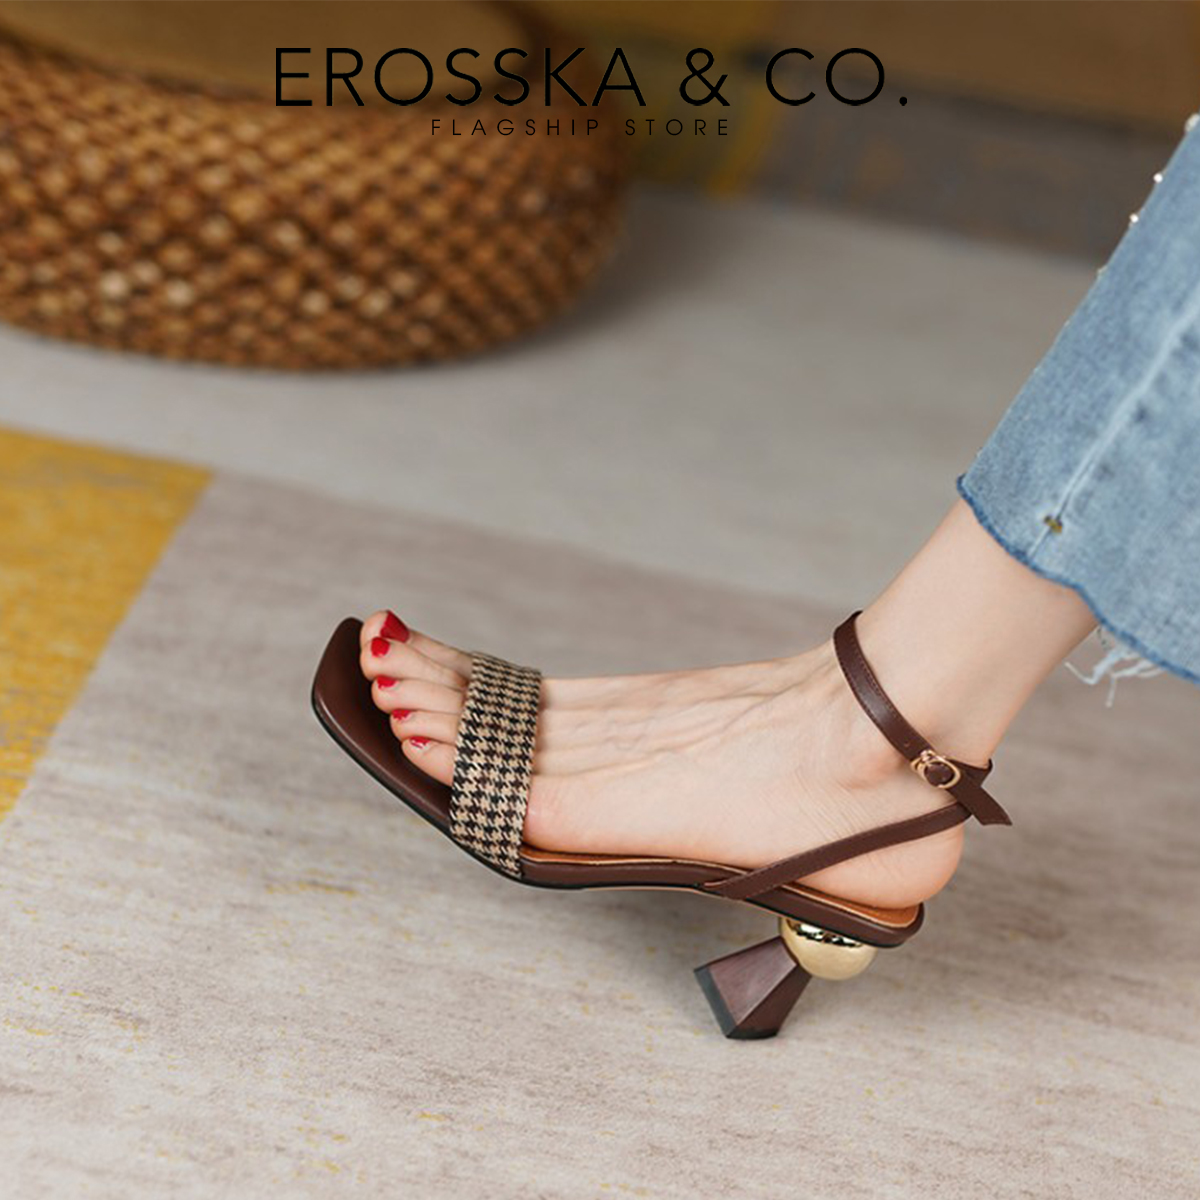 Erosska - Sandal cao gót mũi hở đế vuông phối dây quai mảnh cao 7cm - EB055